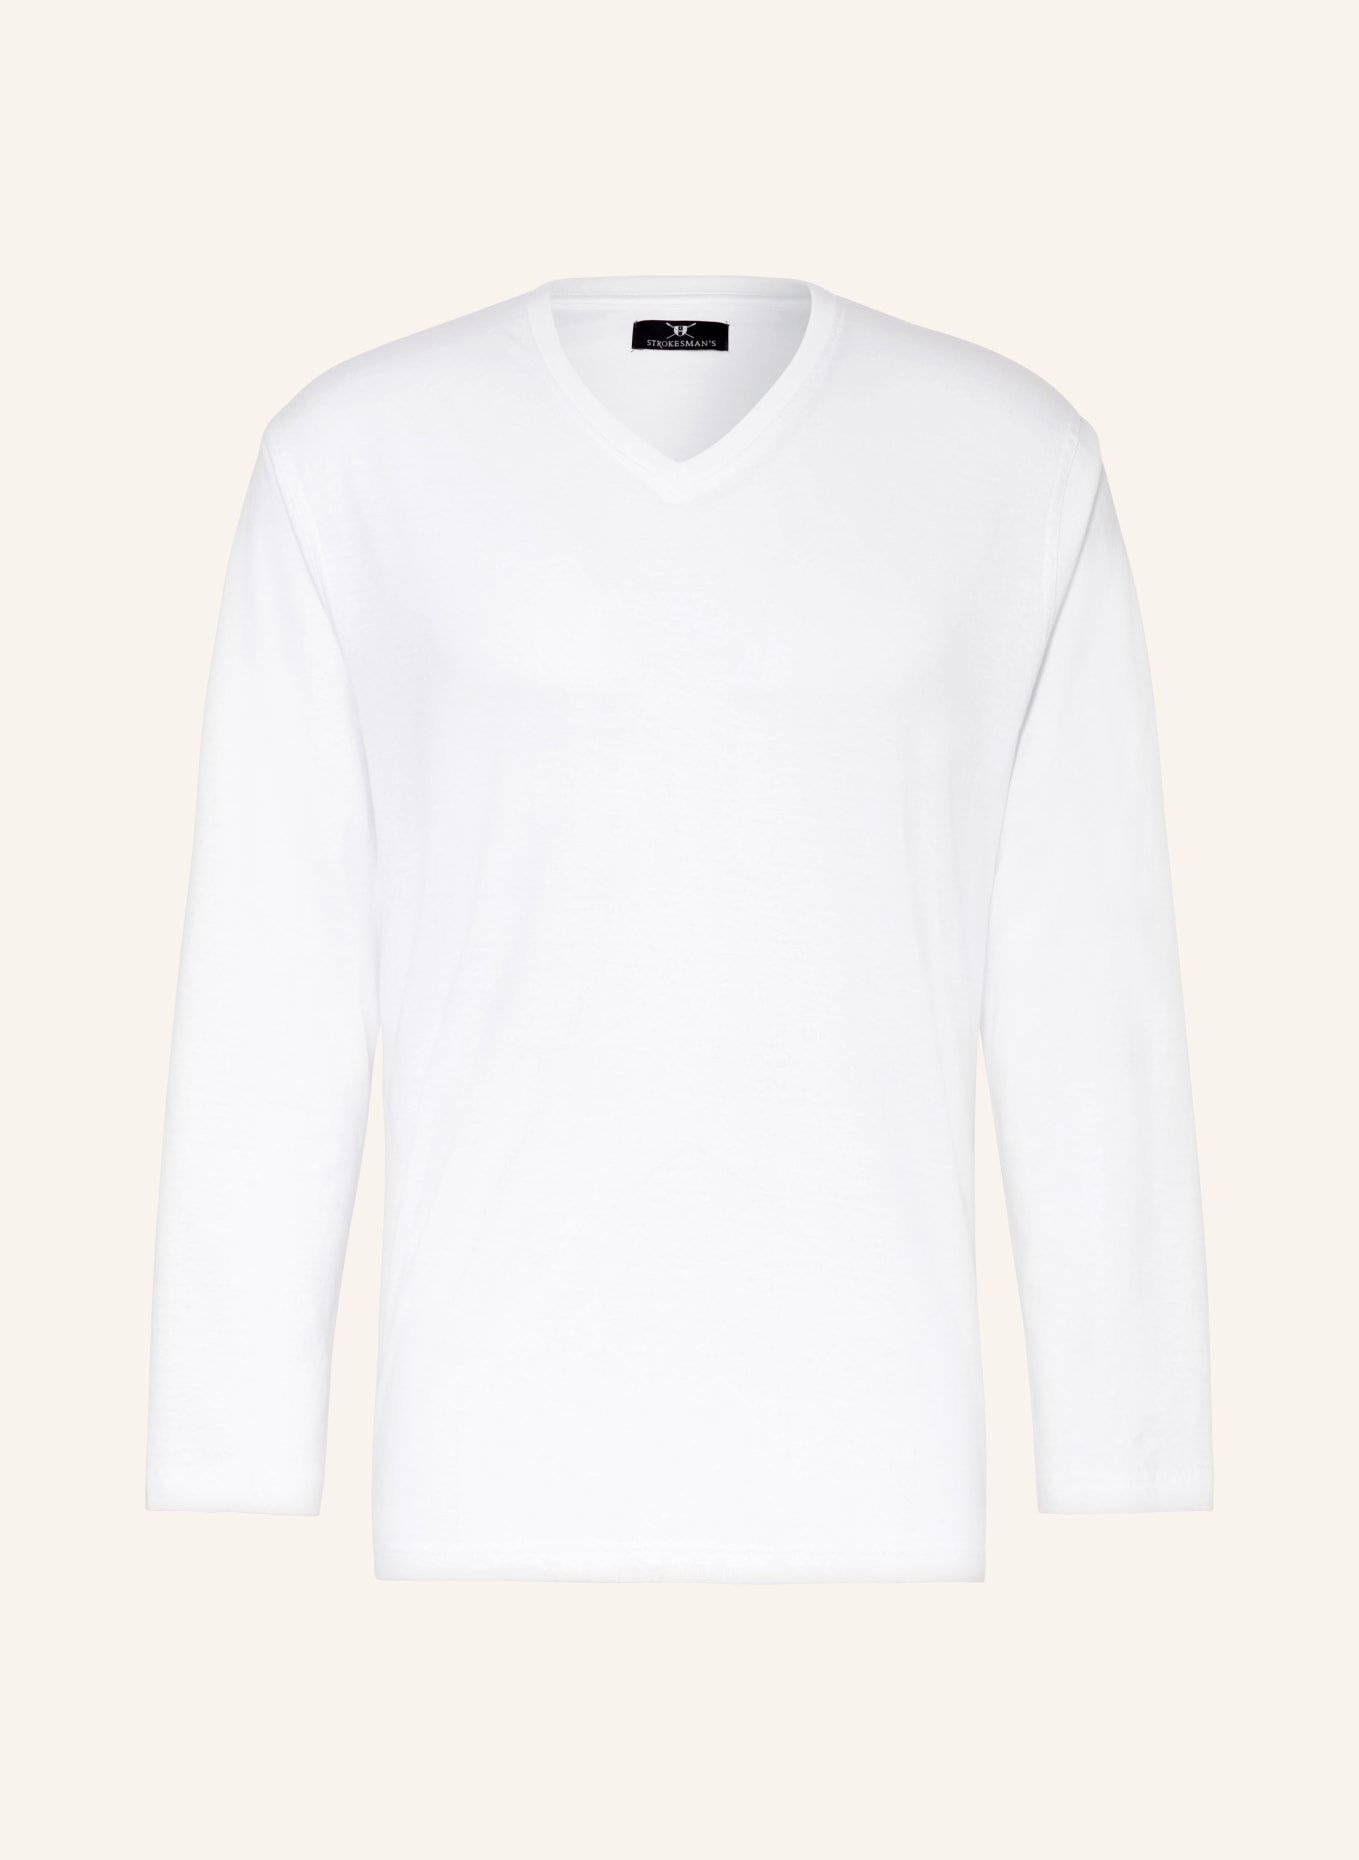 STROKESMAN'S Pajama shirt, Color: WHITE (Image 1)